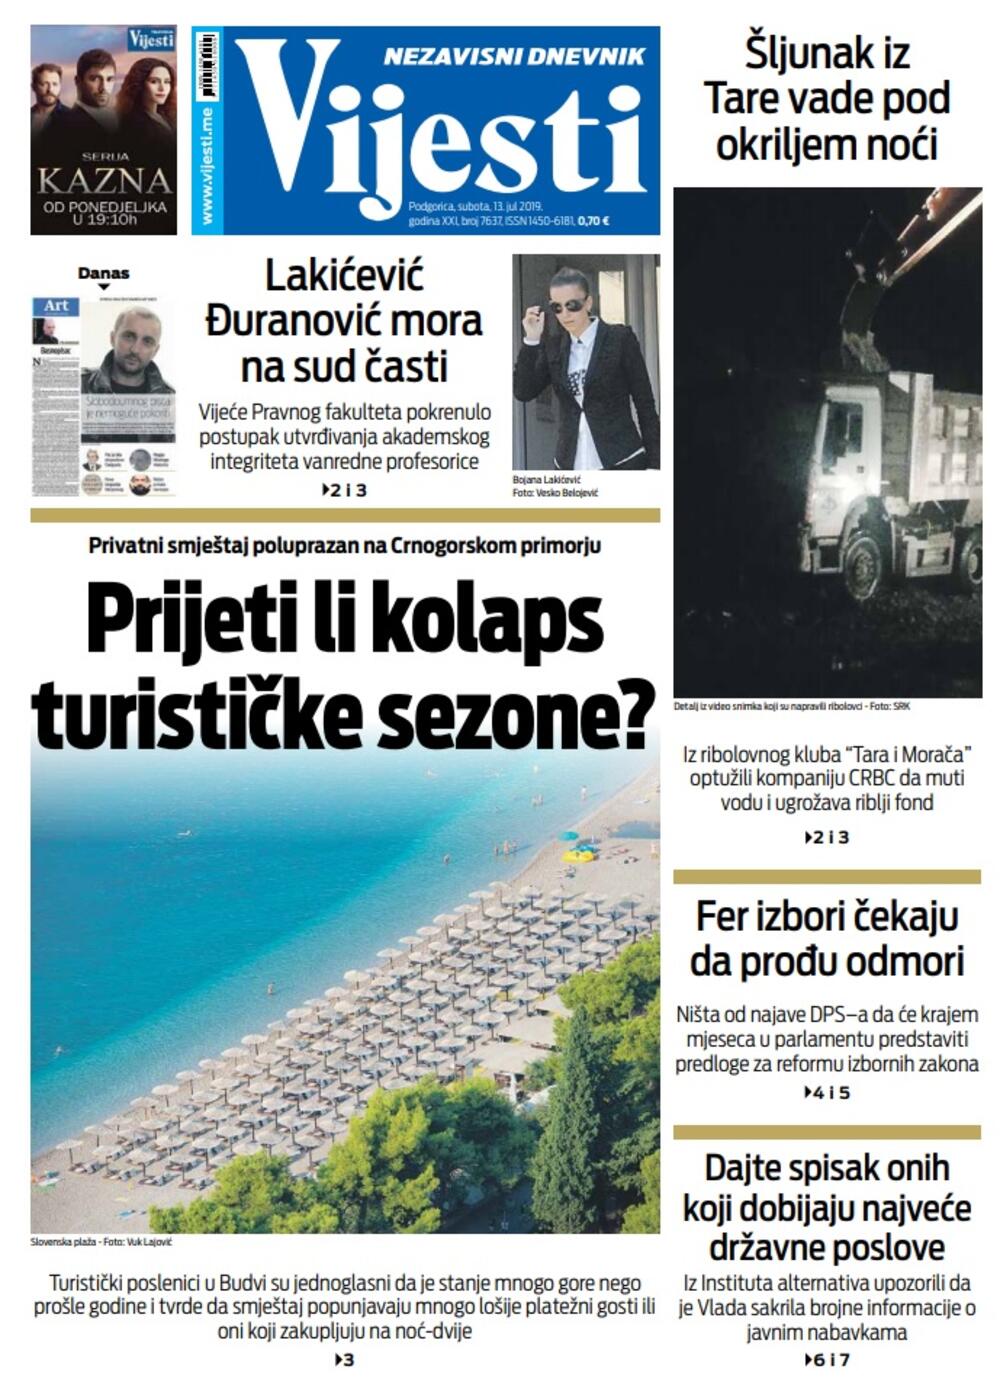 Naslovna strana "Vijesti" za 13. jul, Foto: Vijesti